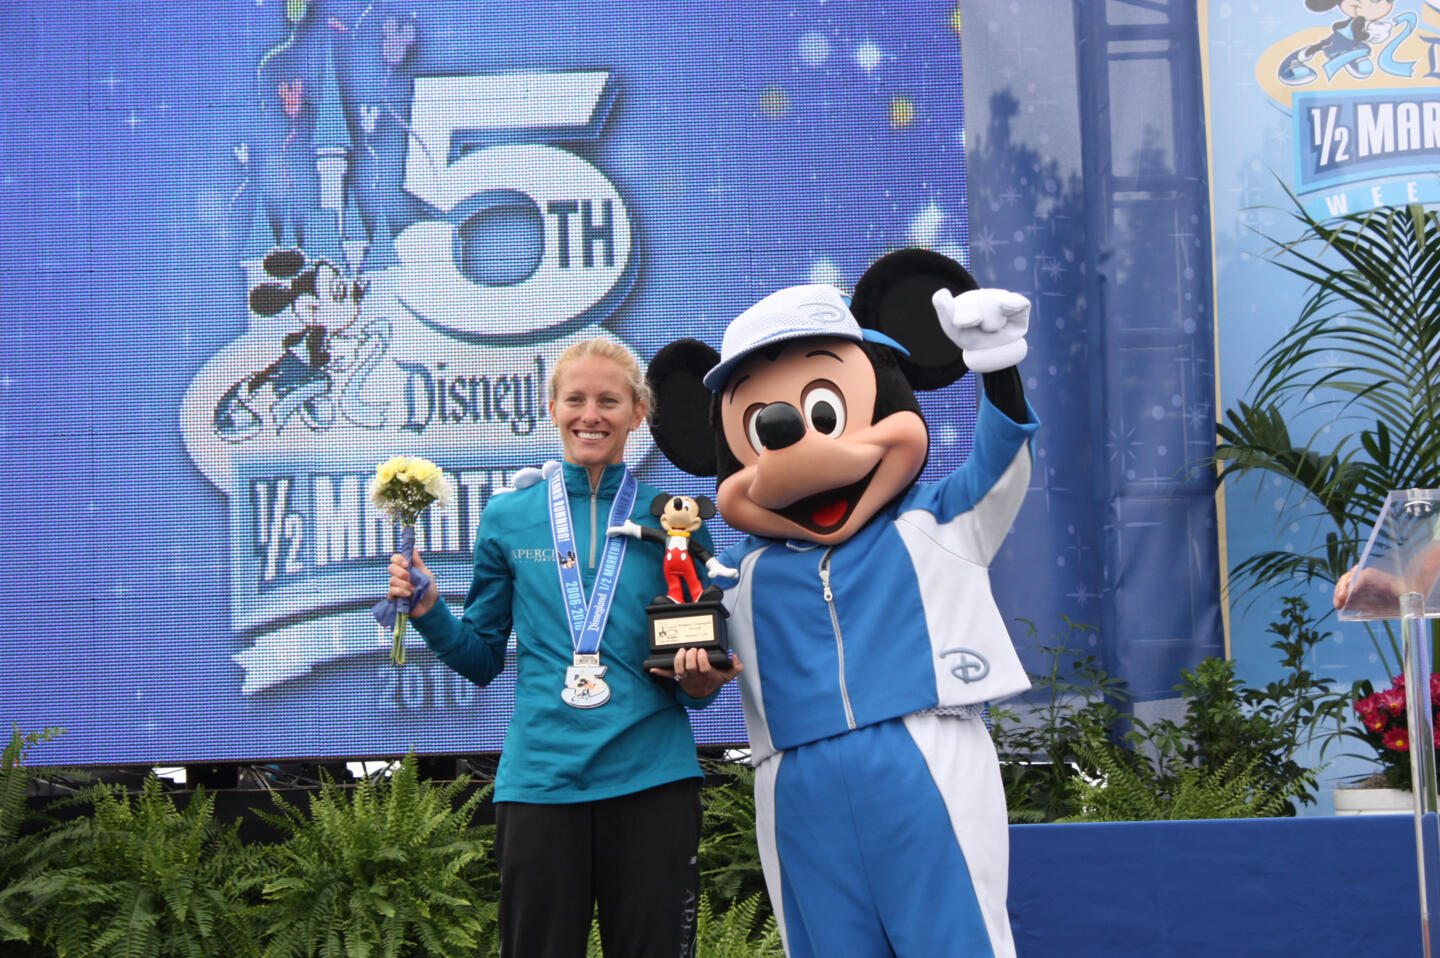 Una corredora ganadora sosteniendo un trofeo y un ramo de flores en el escenario, acompañada de Mickey Mouse en ropa deportiva, en la 5ª edición del Disney 1/2 Maratón.